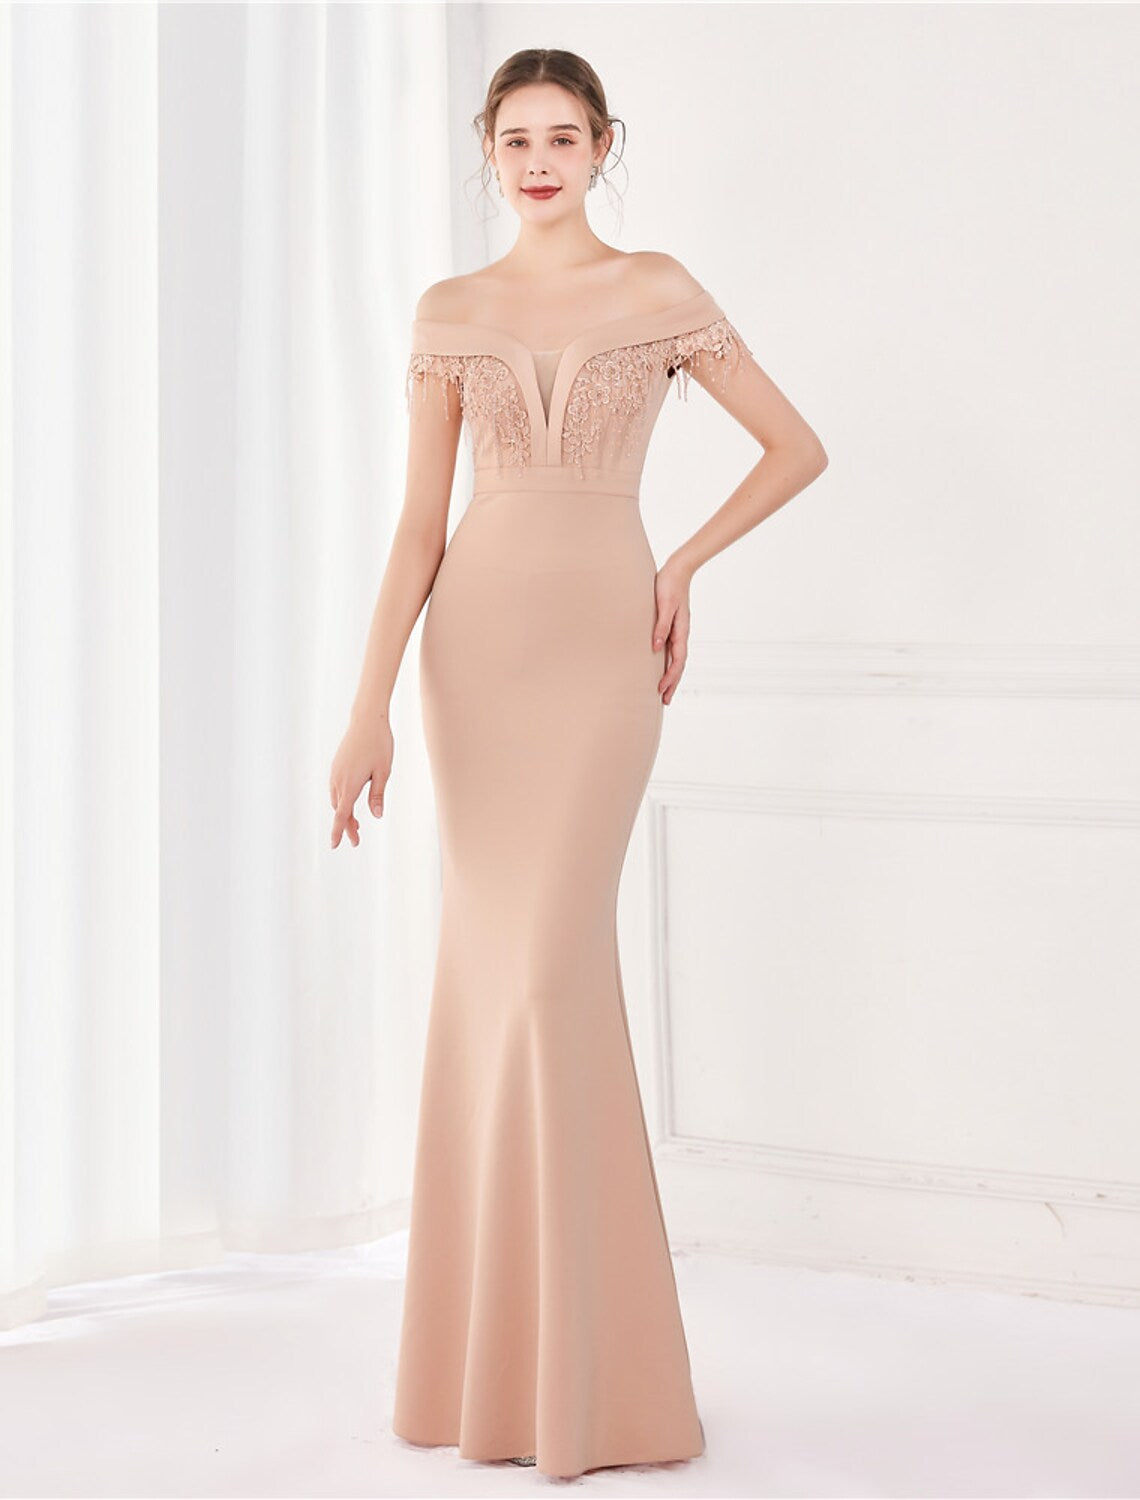 Elegant Sexy Wedding Formal Evening Dress Off Shoulder V Back Short Sleeve Floor Length Satin with Tassel